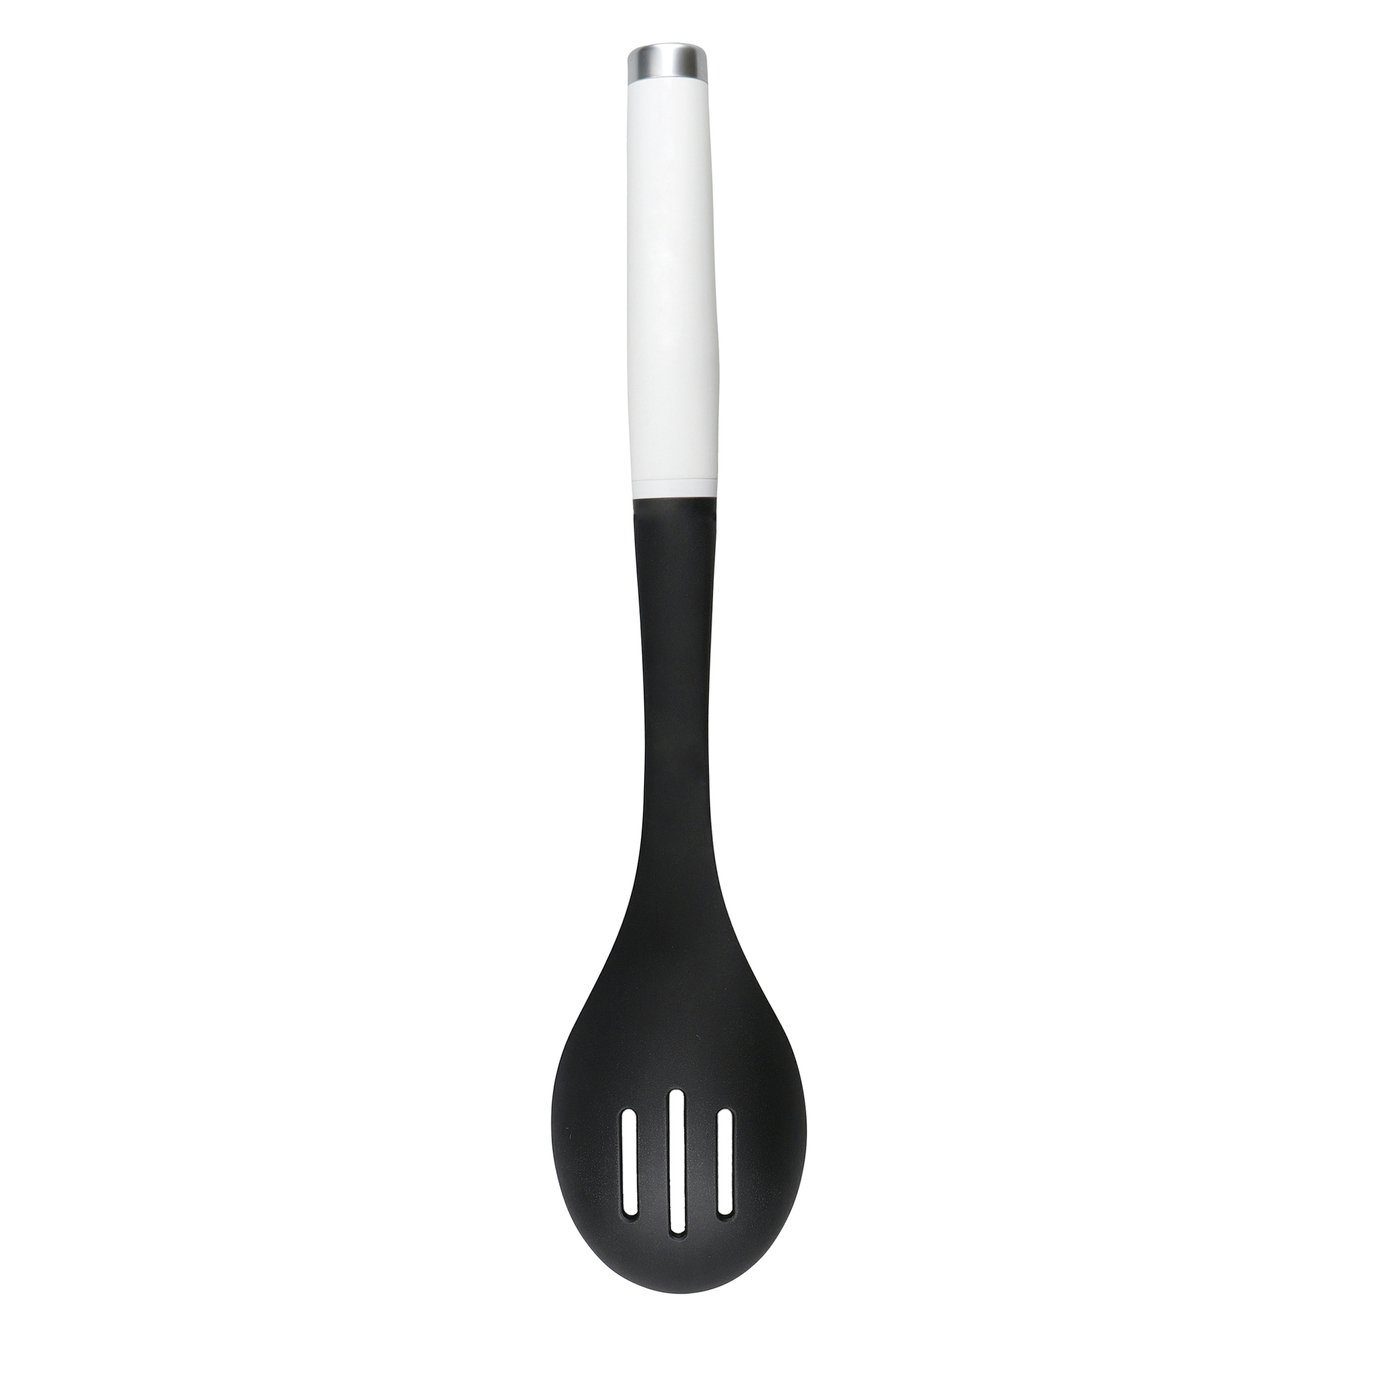 KitchenAid Classic Plastic Slotted Spoon - White